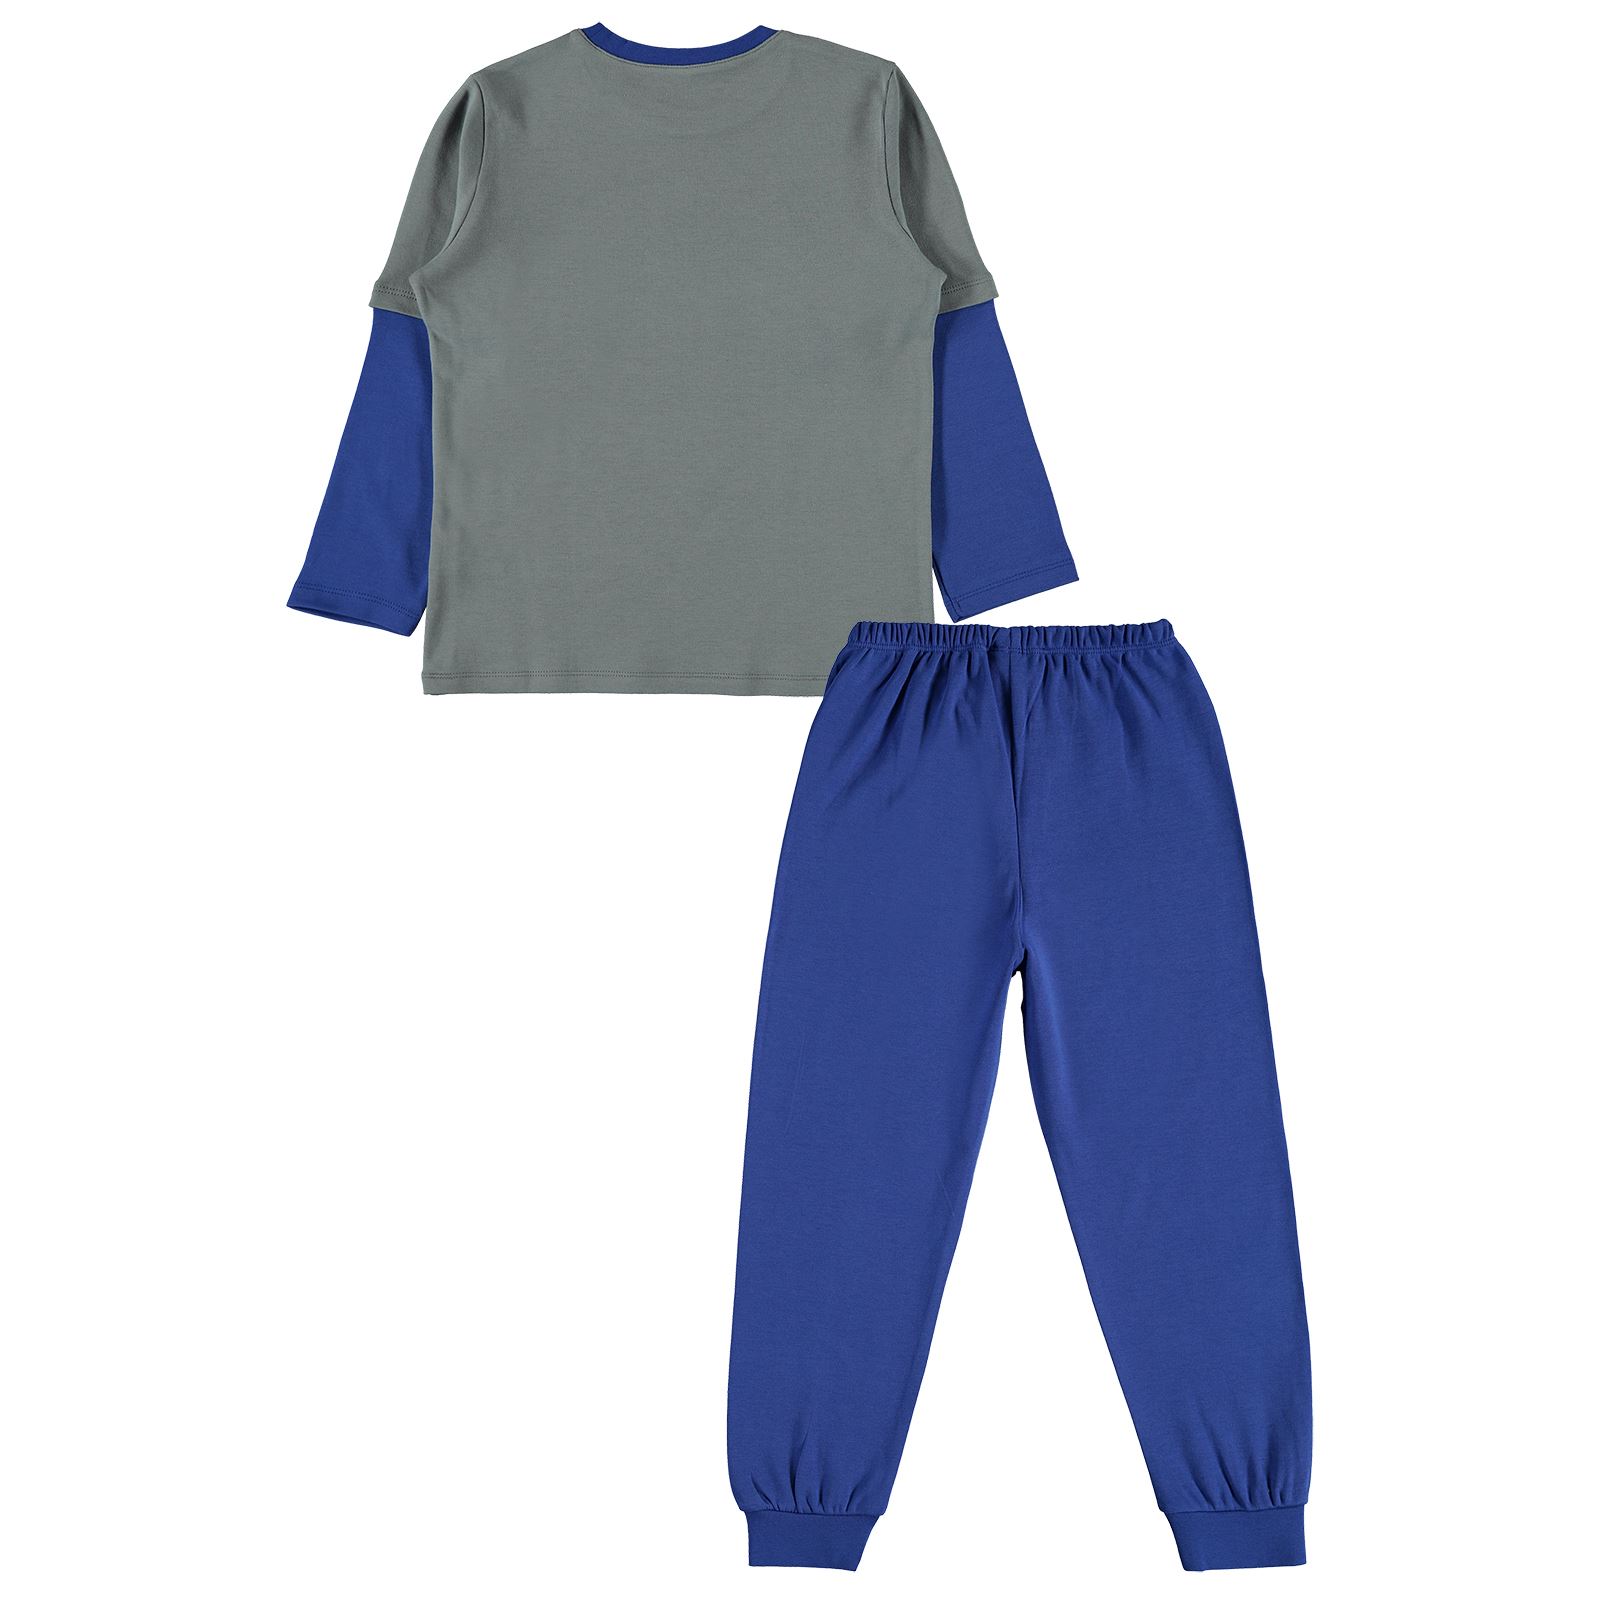 Civil Boys Erkek Çocuk Pijama Takımı 10-13 Yaş Saks Mavisi